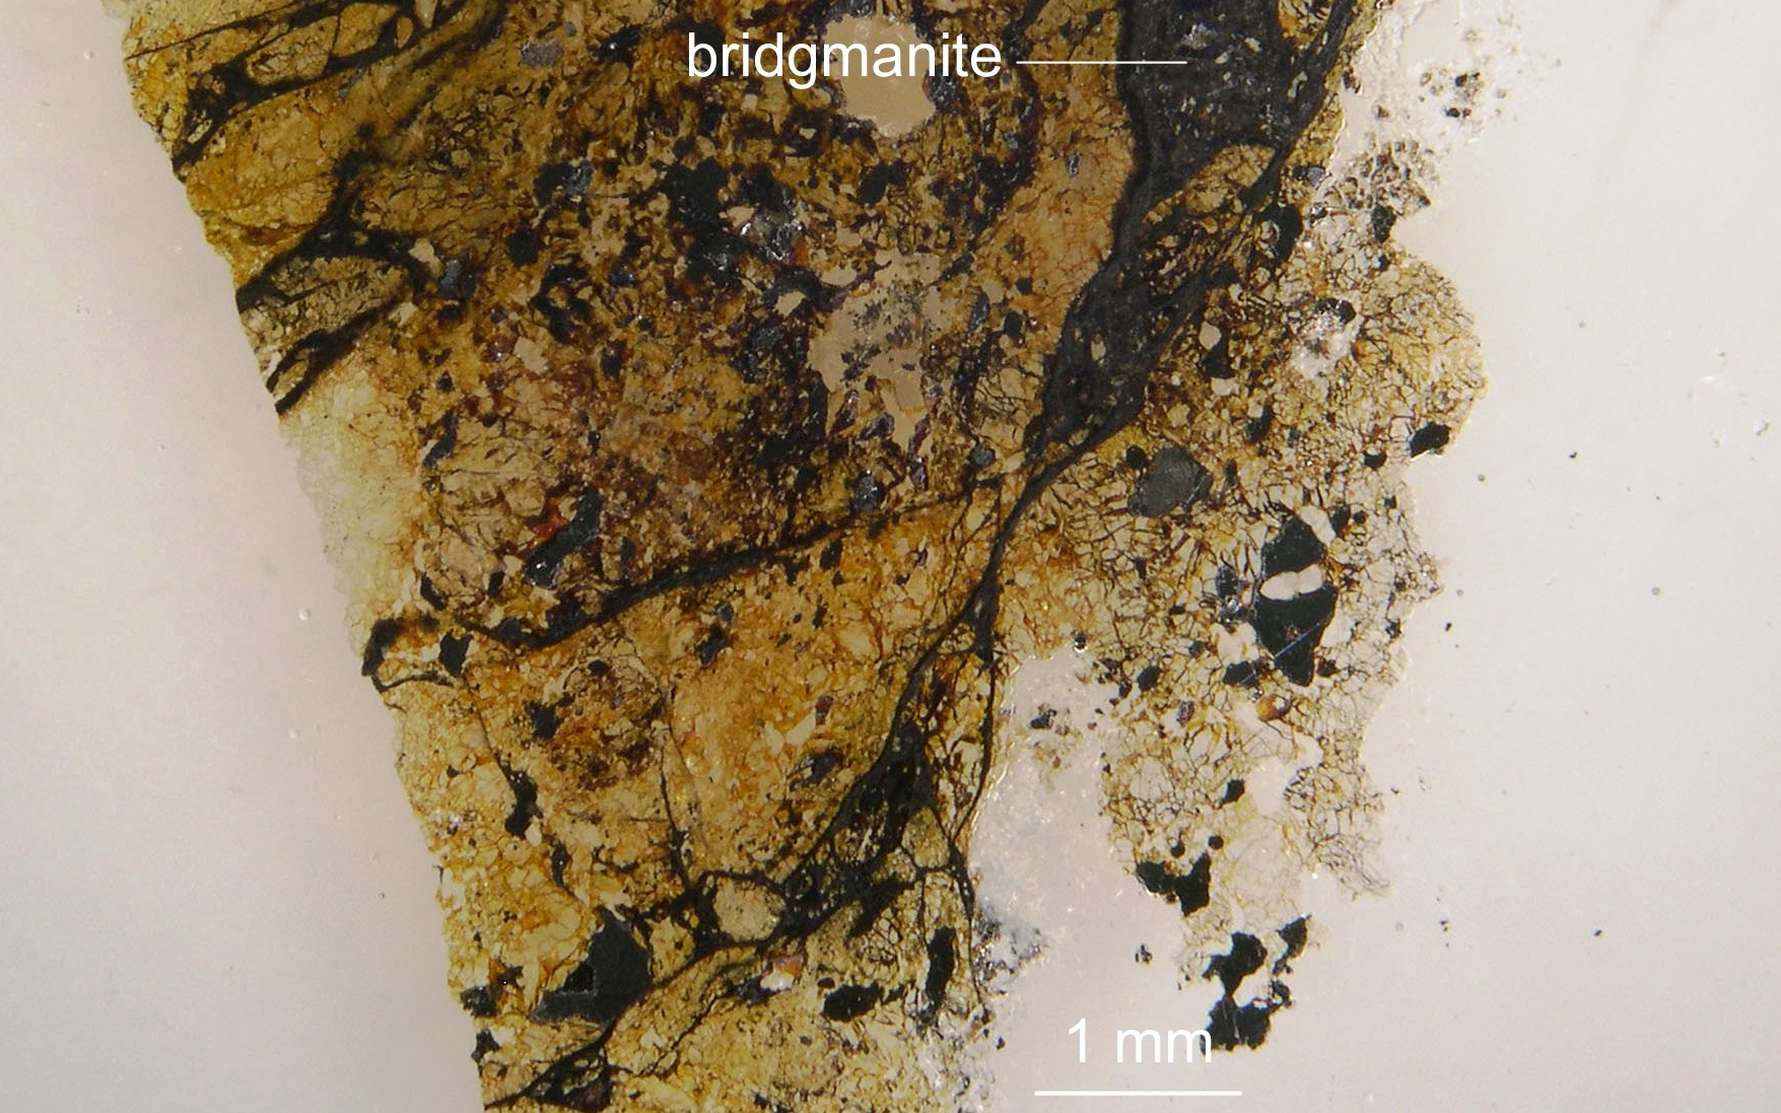 Cette lame mince de roche montre un échantillon de la météorite de Tenham âgée d'environ 4,5 milliards d'années. Elle renferme un cristal jamais retrouvé à l'état naturel mais qui constitue pourtant un des composants majeurs du manteau inférieur de la Terre. Il vient d'être baptisé : bridgmanite. © Chi Ma